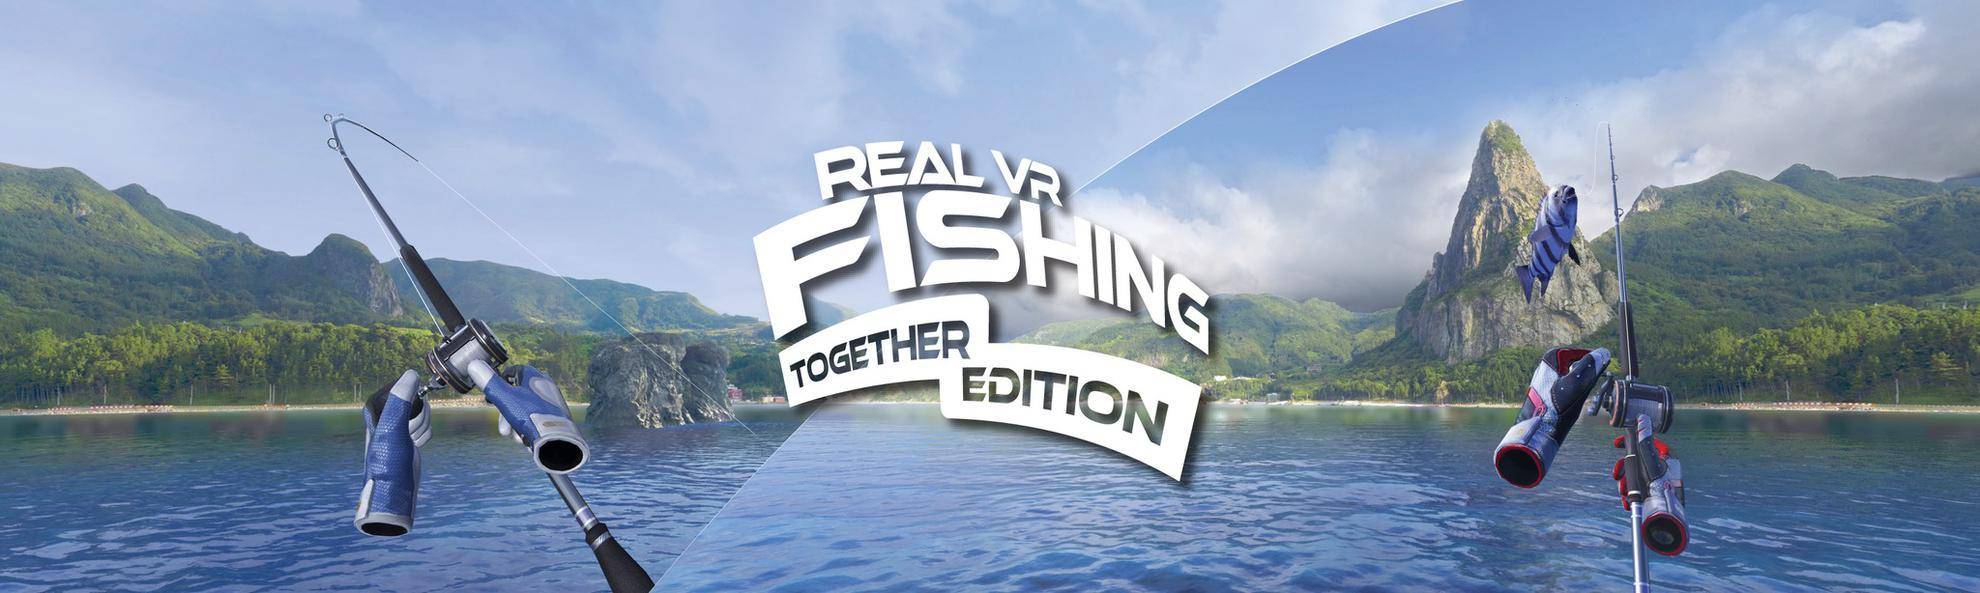 真实极限垂钓(Real VR Fishing)